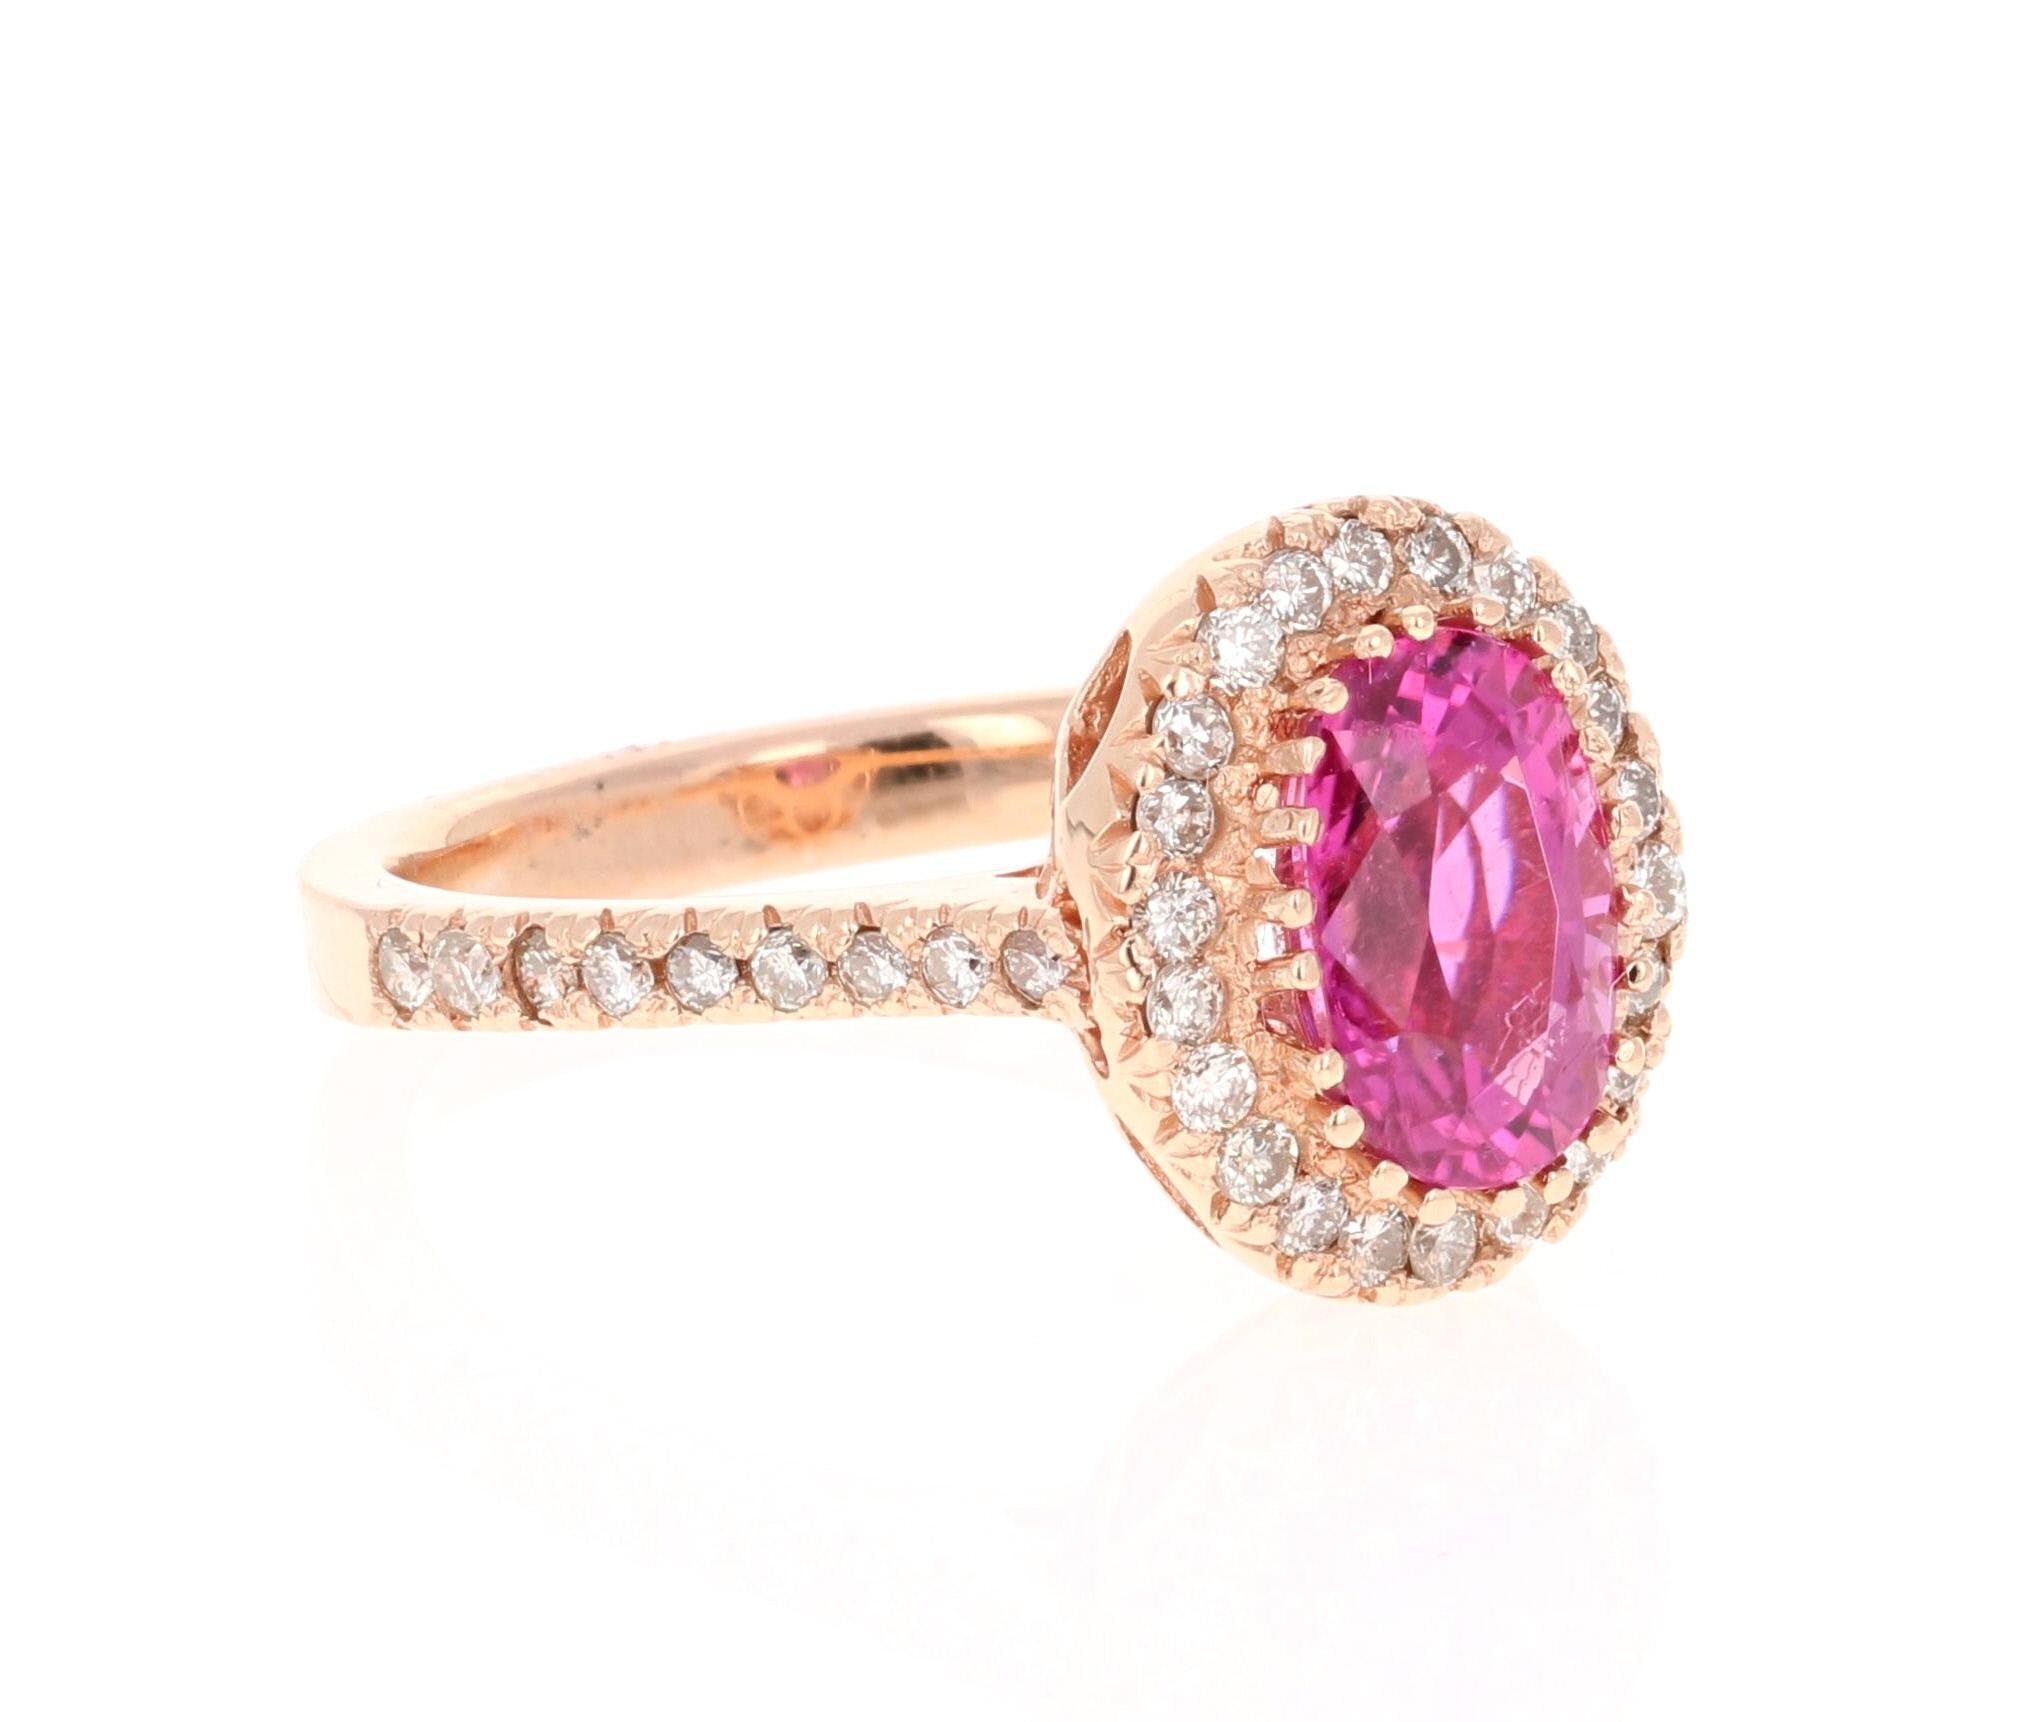 Wow! Wunderschön und glühend - Pinker Turmalin-Diamant-Ring!

Dieser Ring hat einen Oval Cut Hot Pink Turmalin, die 2.08 Karat wiegt. Um den Turmalin herum schweben 38 Diamanten im Rundschliff mit einem Gewicht von 0,54 Karat. Das Gesamtkaratgewicht